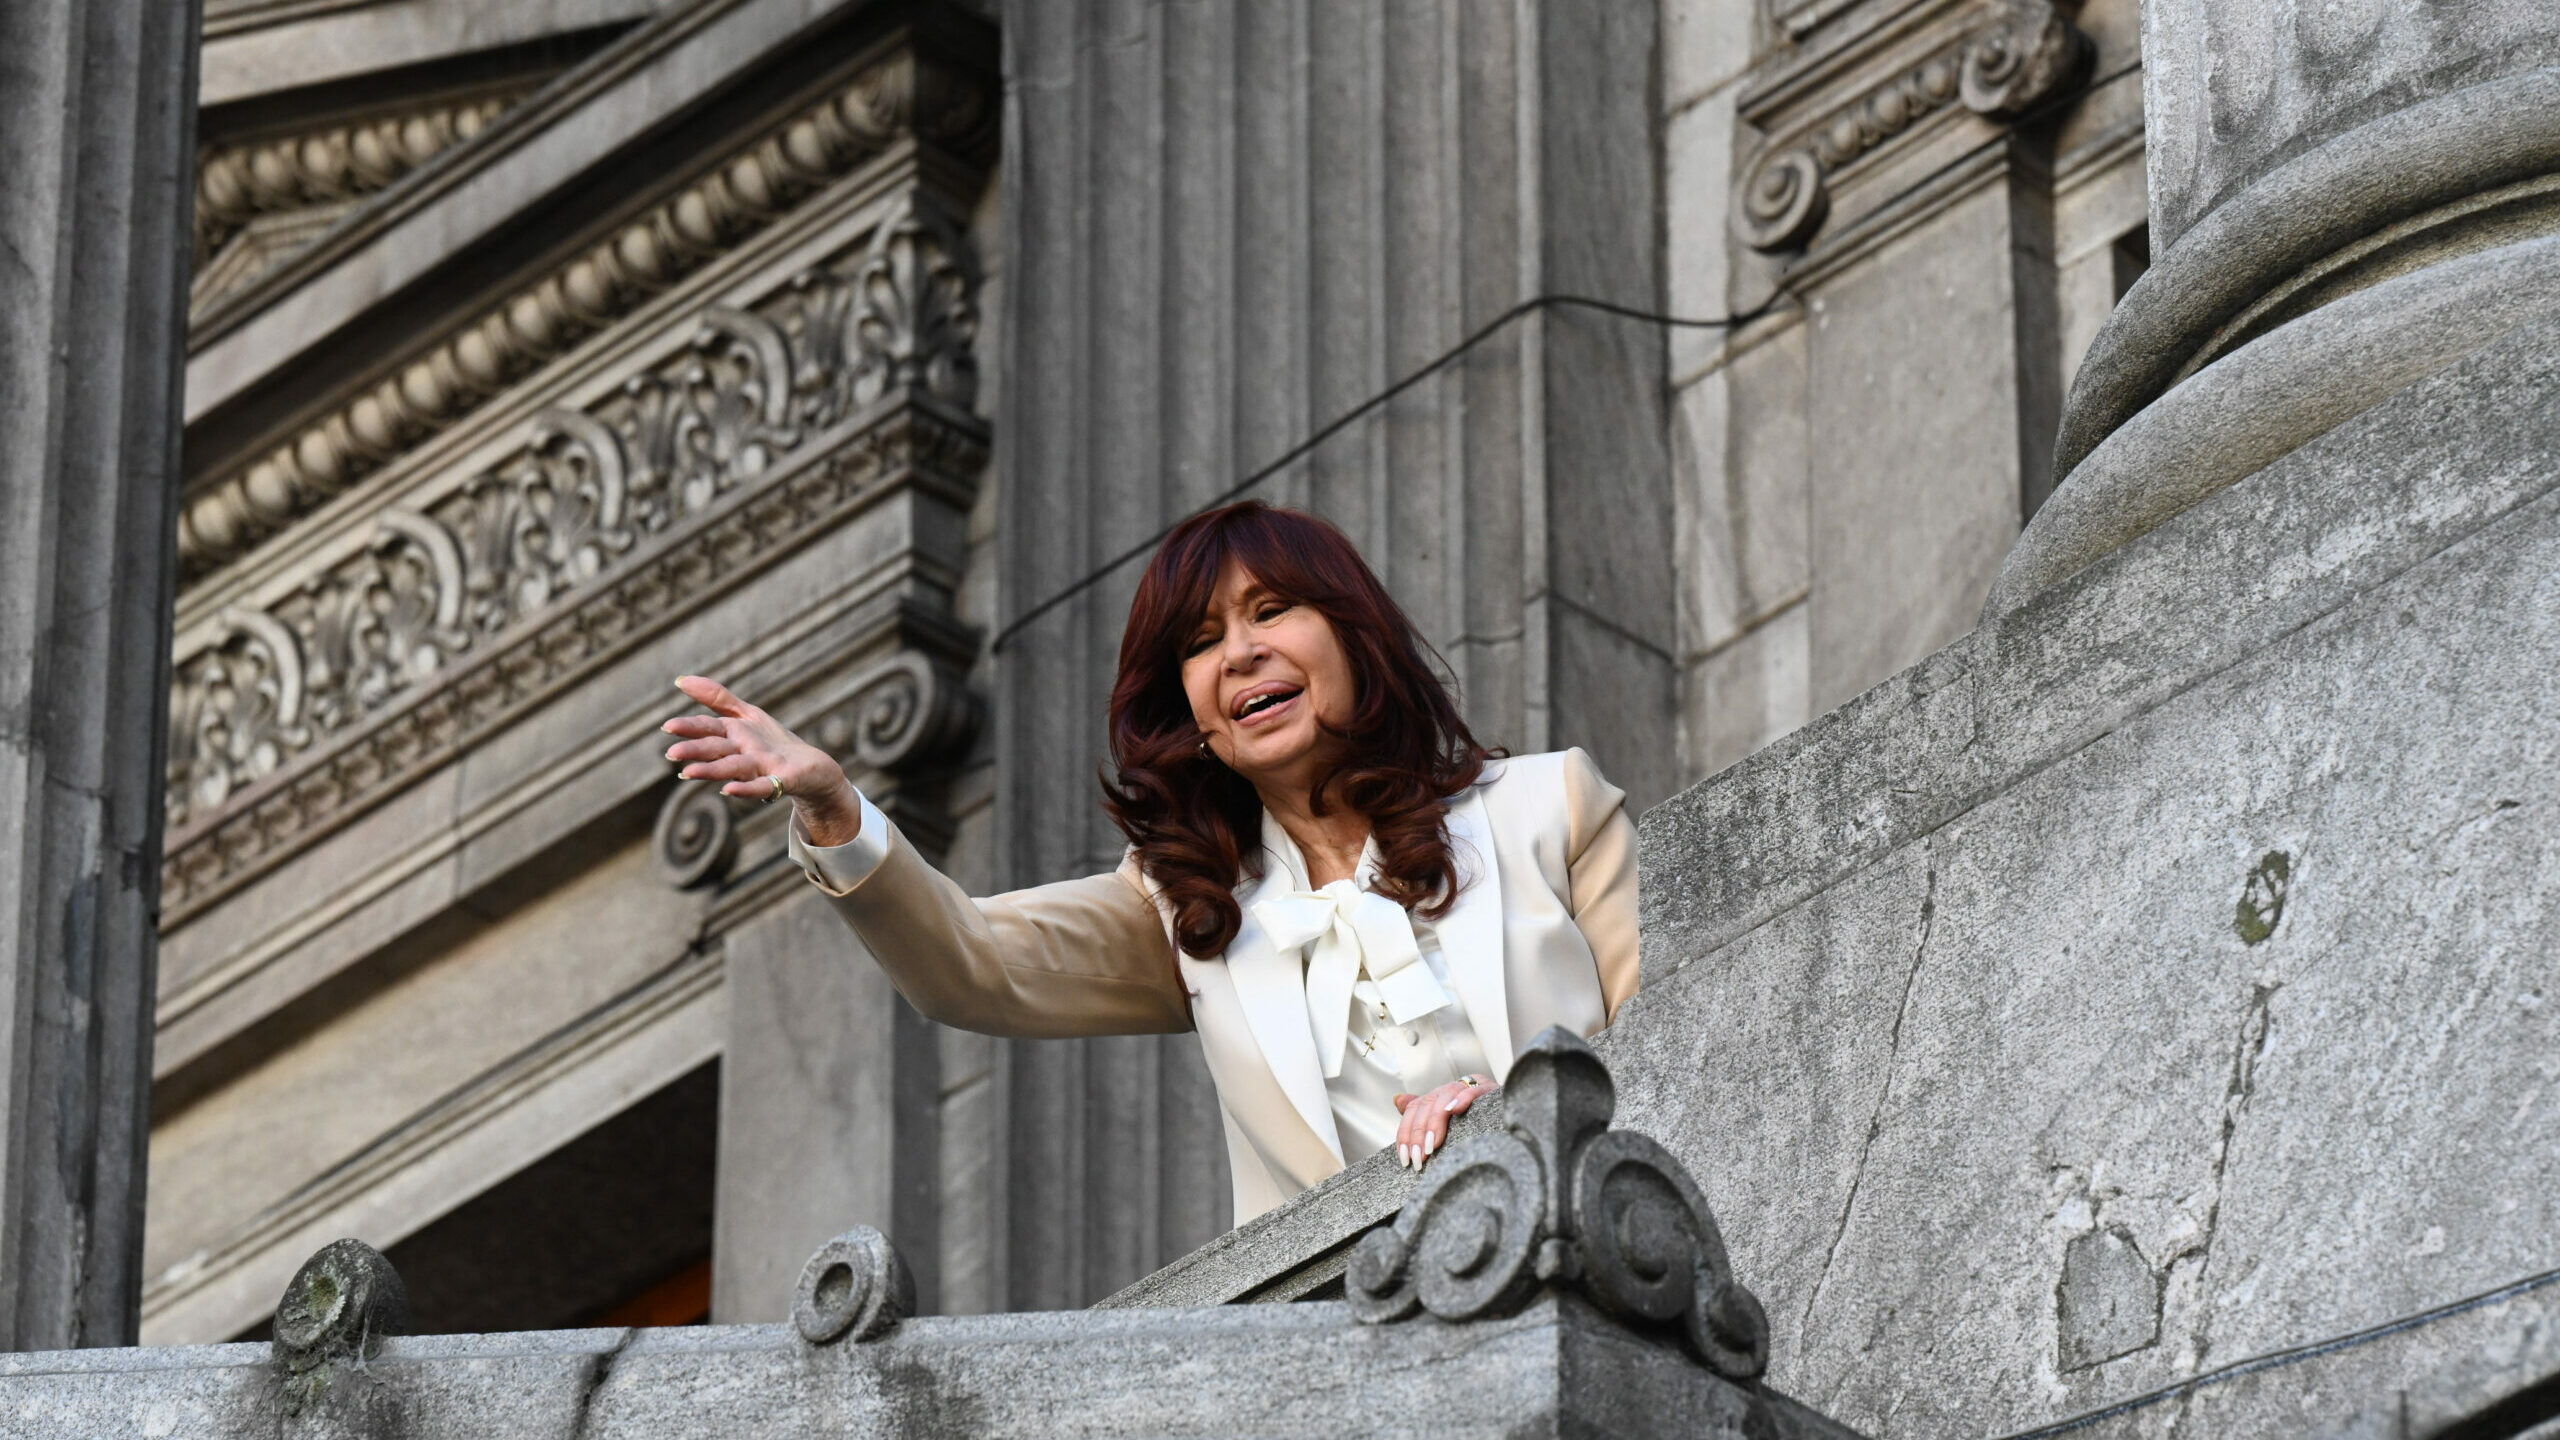 La Justicia argentina reabre dos causas contra Cristina Fernández de Kirchner por supuesto lavado de dinero